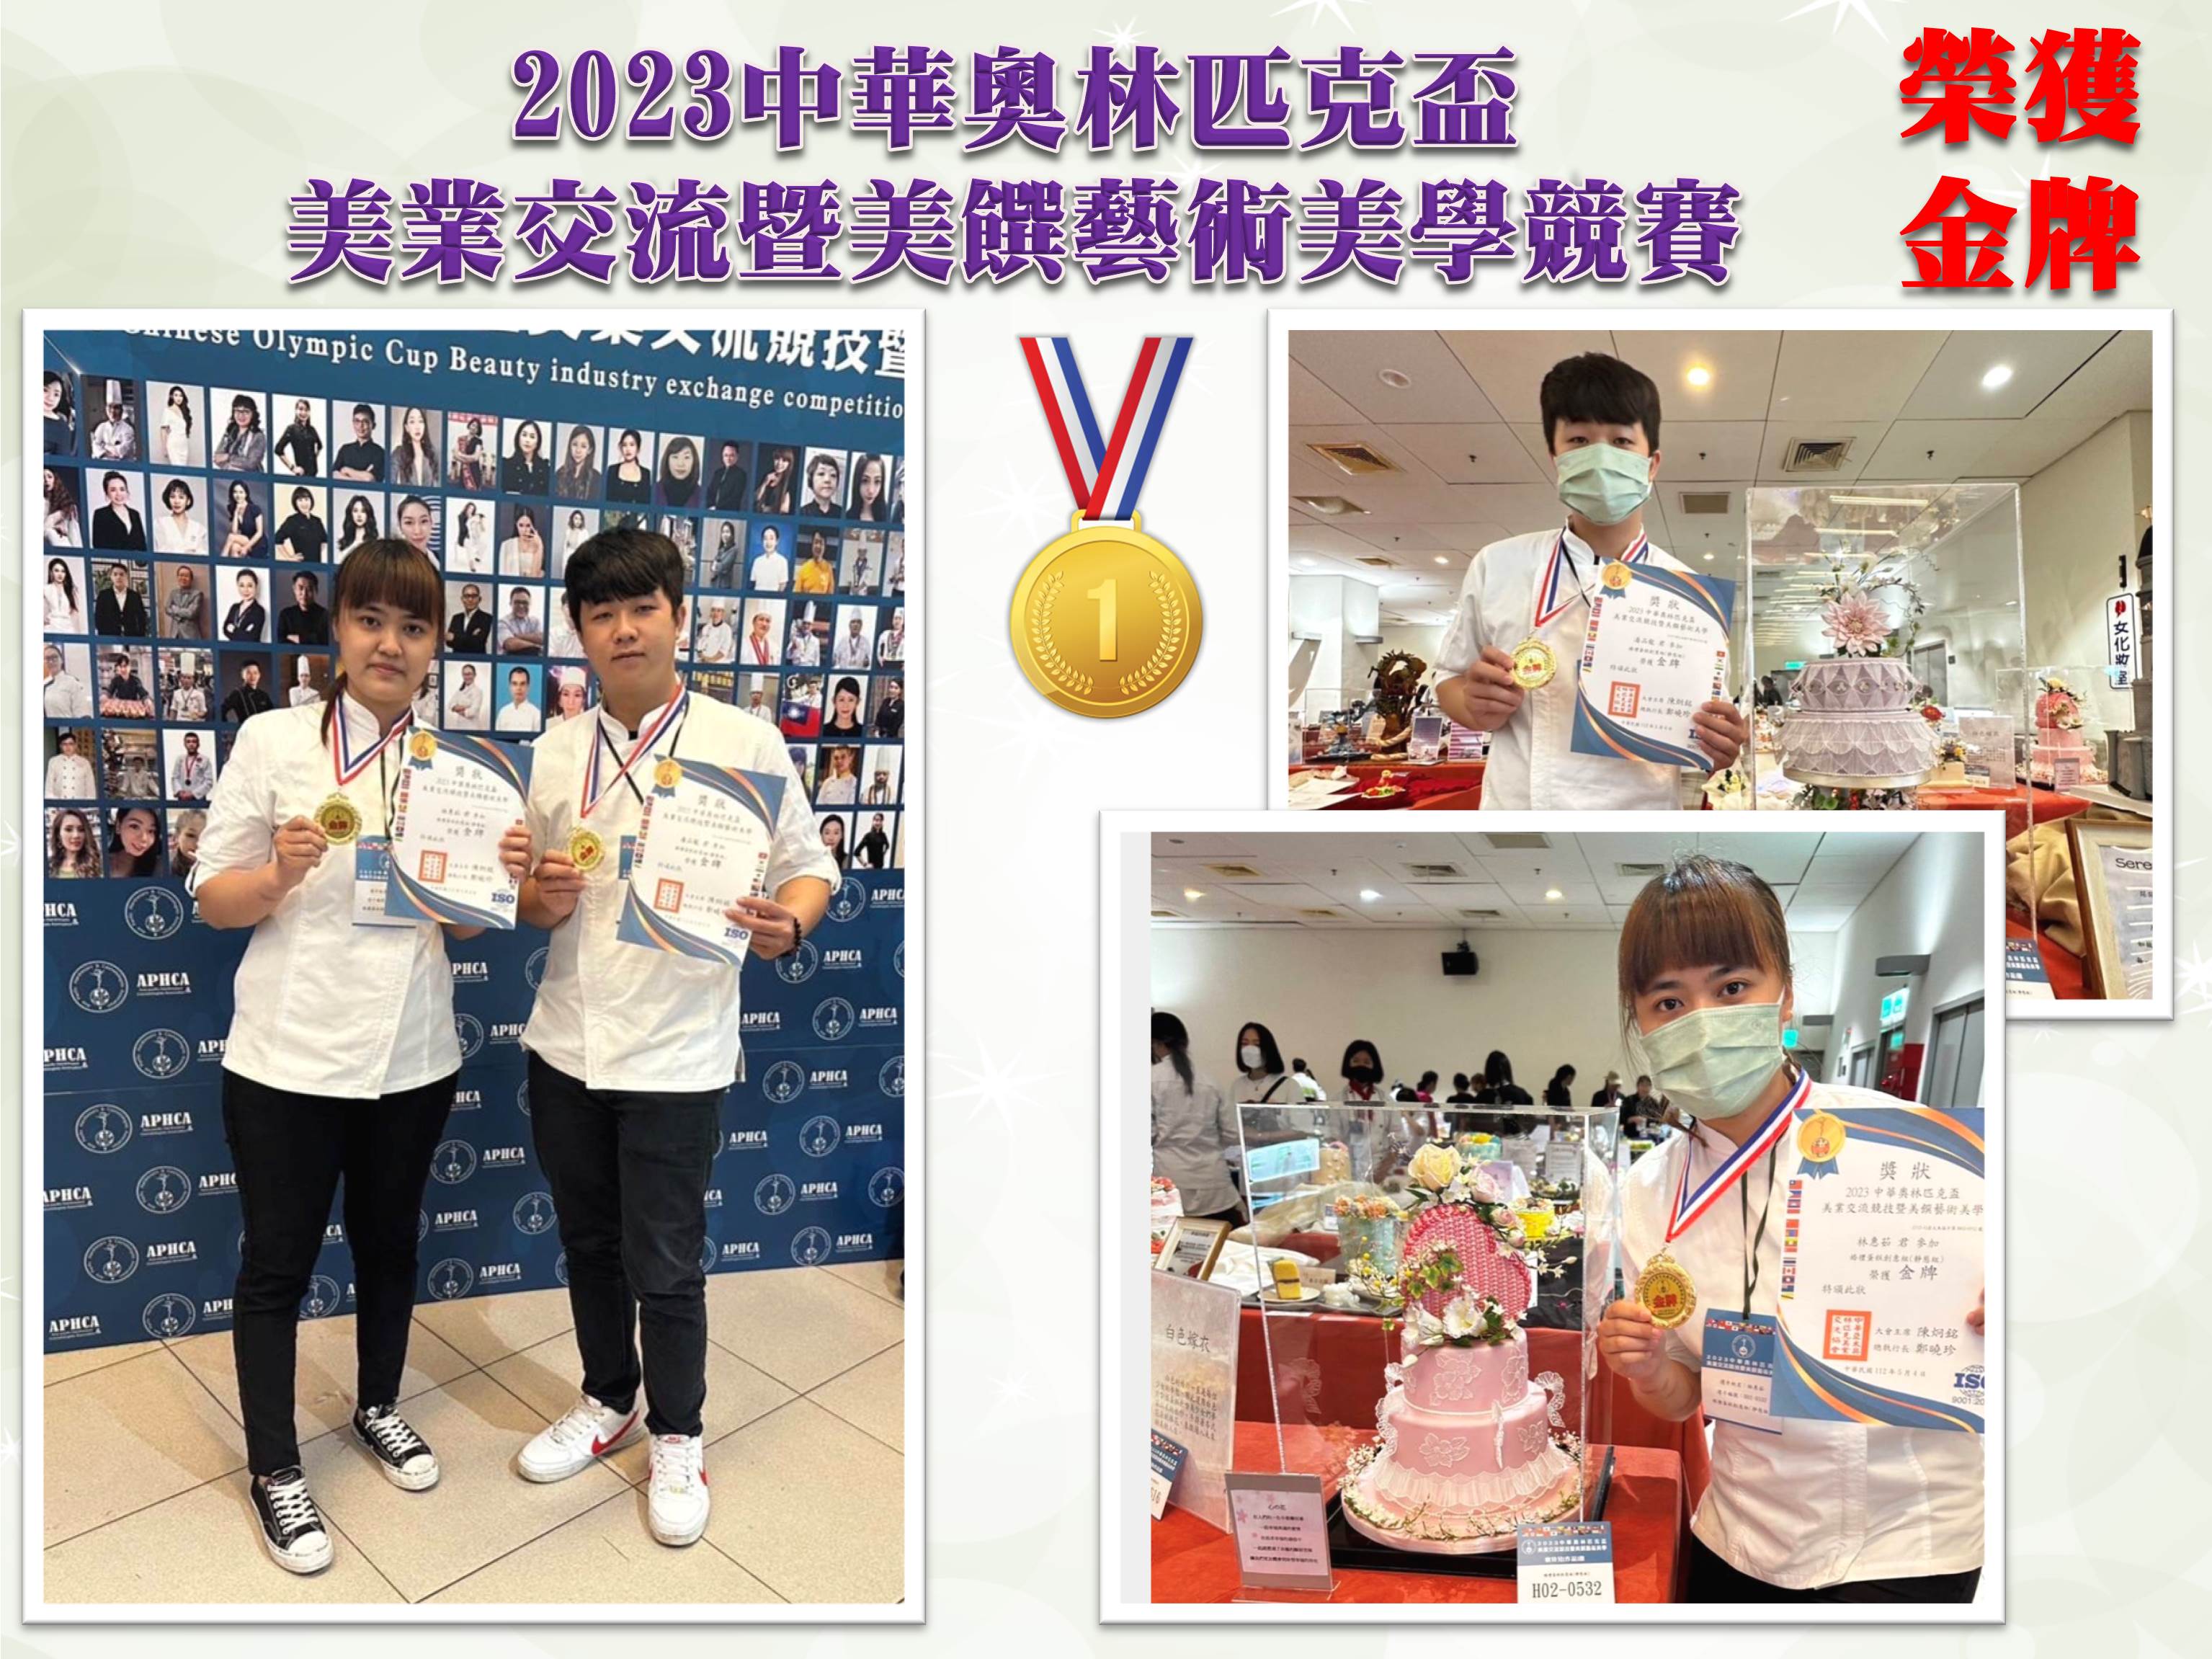 2023中華奧林匹克盃美業交流暨美饌藝術美學競賽 榮獲金牌